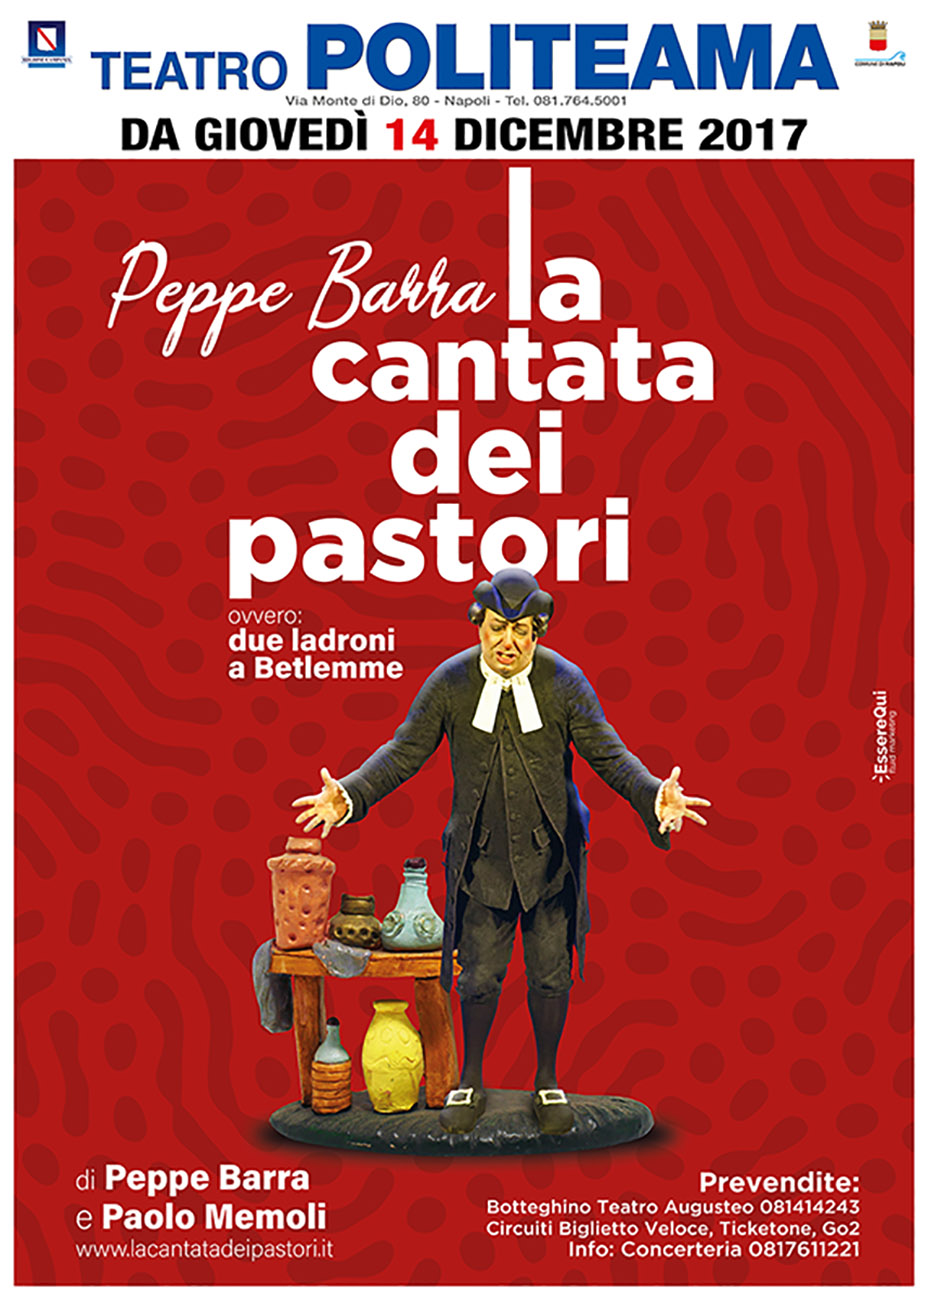 Teatro Politeama: Peppe Barra presenta “La Cantata dei Pastori”